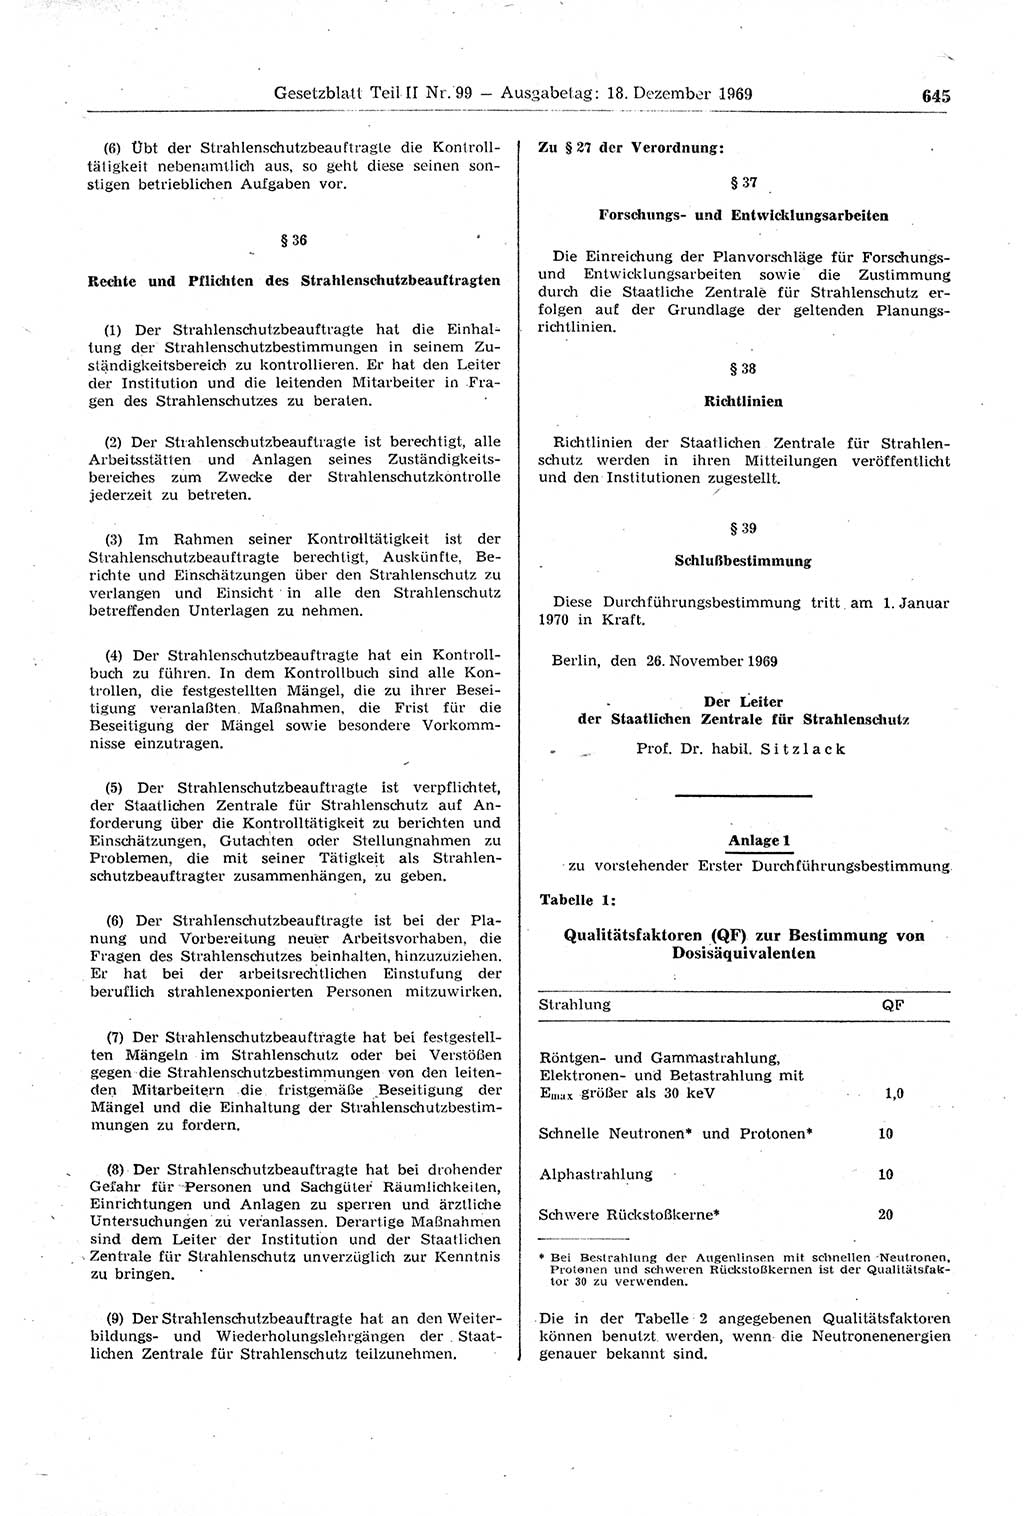 Gesetzblatt (GBl.) der Deutschen Demokratischen Republik (DDR) Teil ⅠⅠ 1969, Seite 645 (GBl. DDR ⅠⅠ 1969, S. 645)